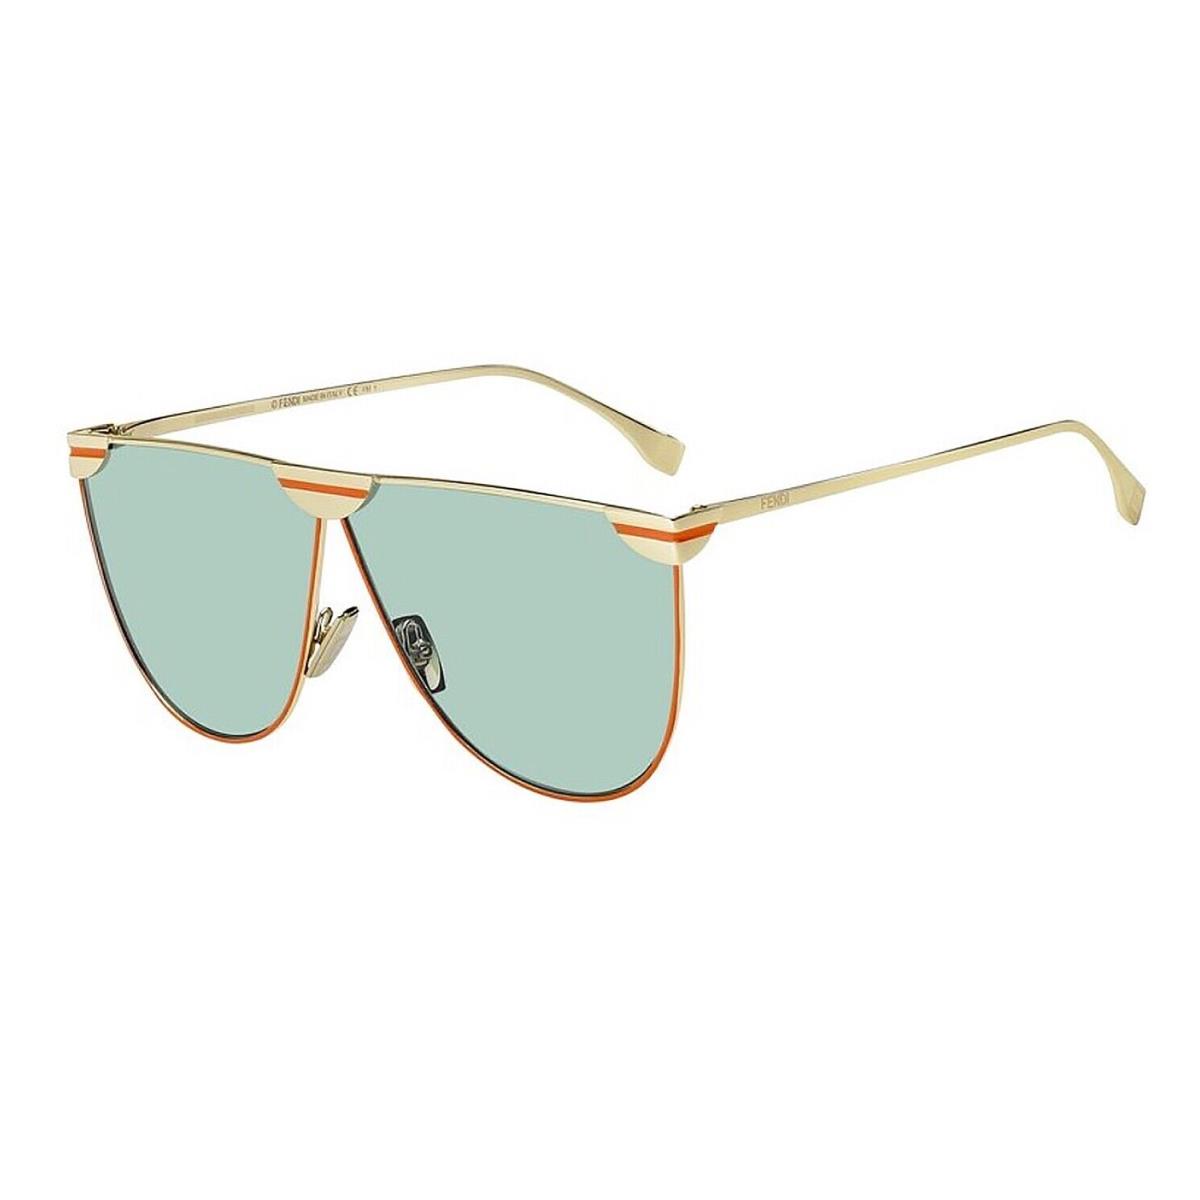 Fendi sunglasses  - Frame: Gold, Lens: Green 4